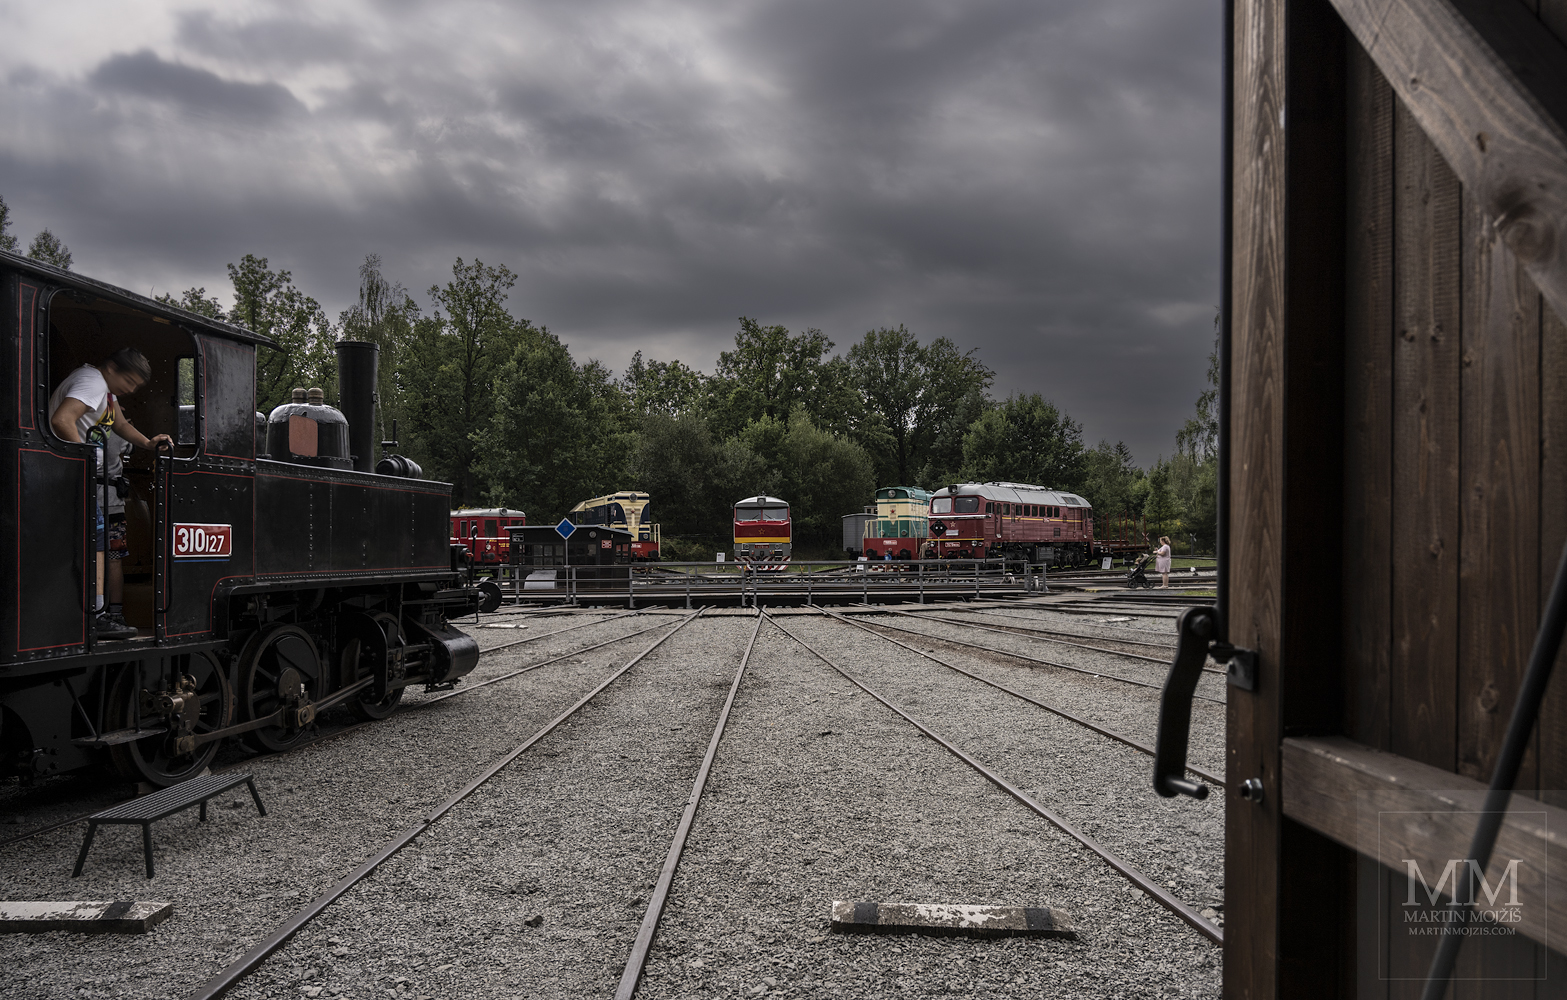 Pohled z rotundy směrem k točně, vlevo parní lokomotiva 310.127.